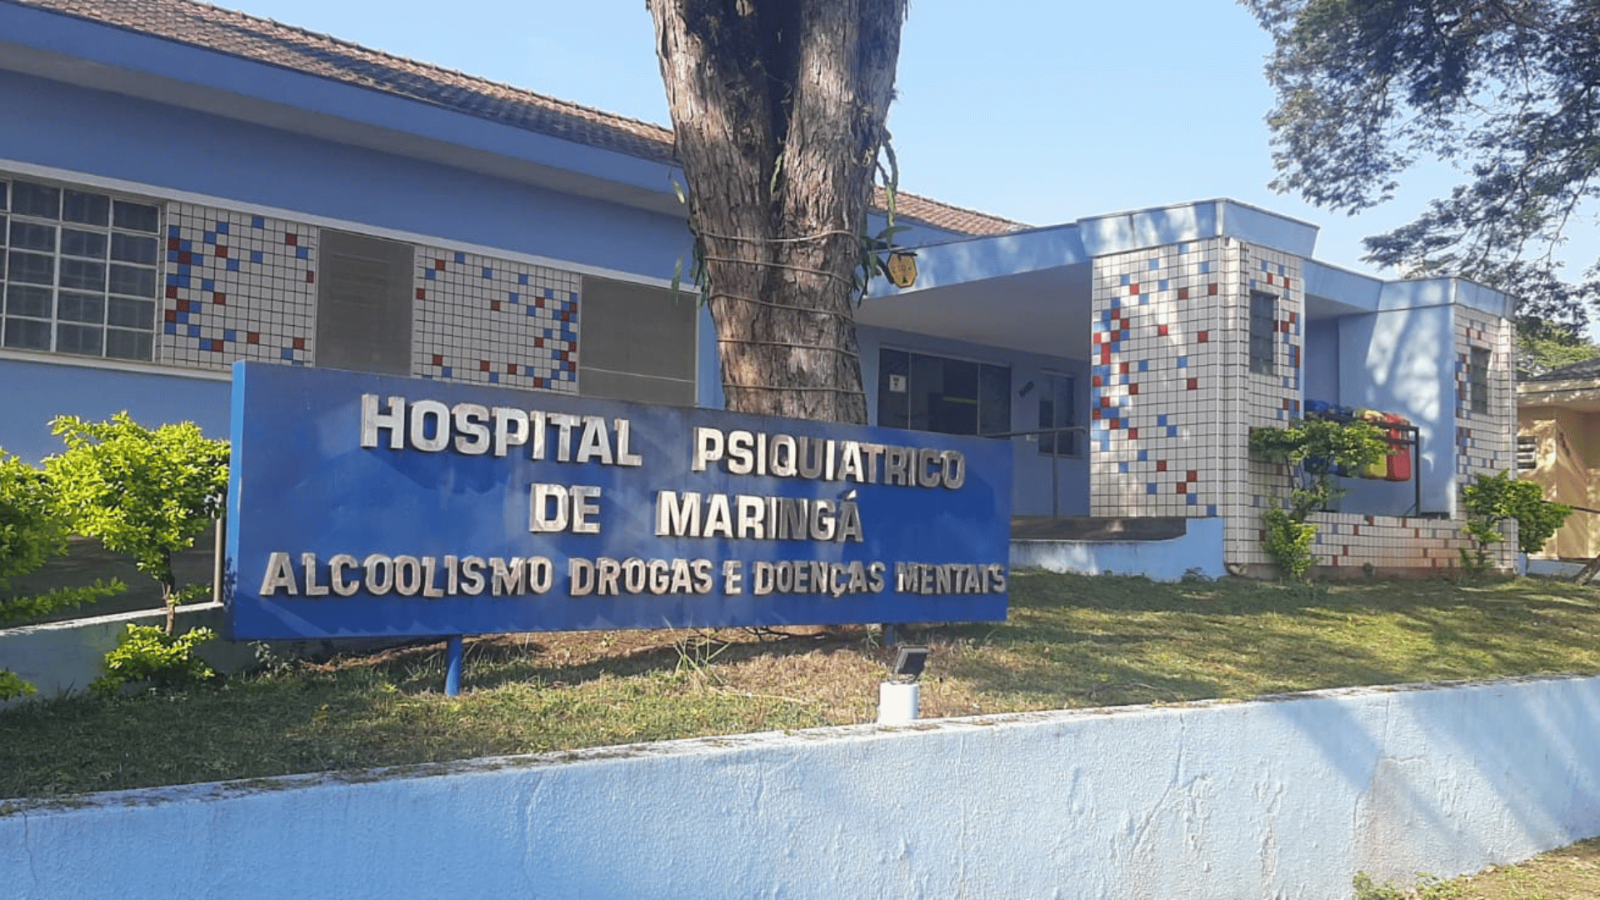 Beto Preto critica fechamento de hospital psiquiátrico, mas esquece que foi sua equipe que fez o relatório que levou a interdição do Hospital?